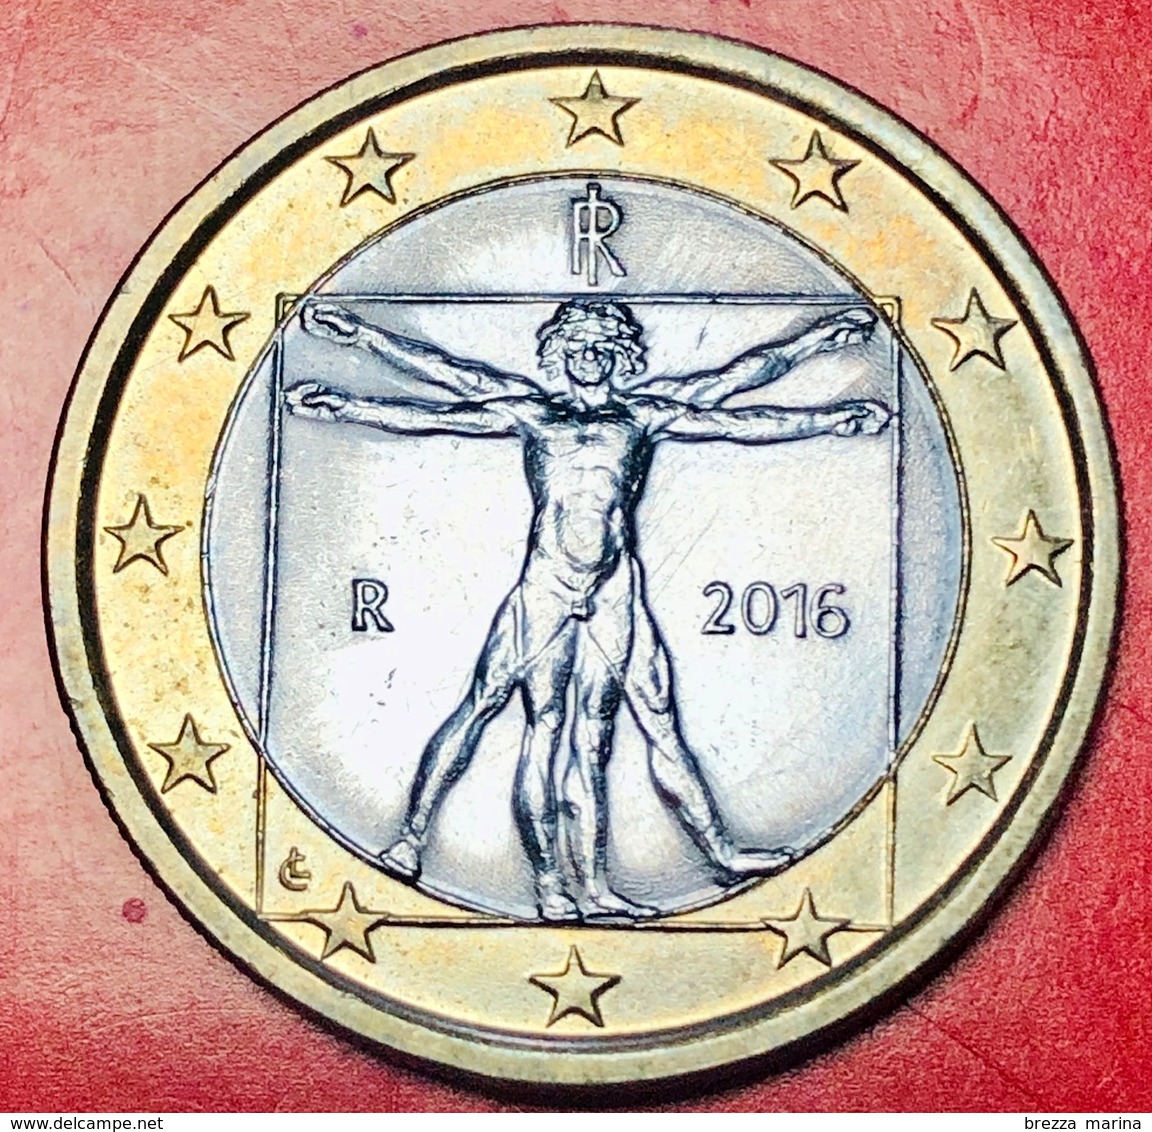 ITALIA - 2016 - Moneta - Proporzioni Ideali Del Corpo Umano, Disegno Di Leonardo Da Vinci - Euro 1.00 - Italia